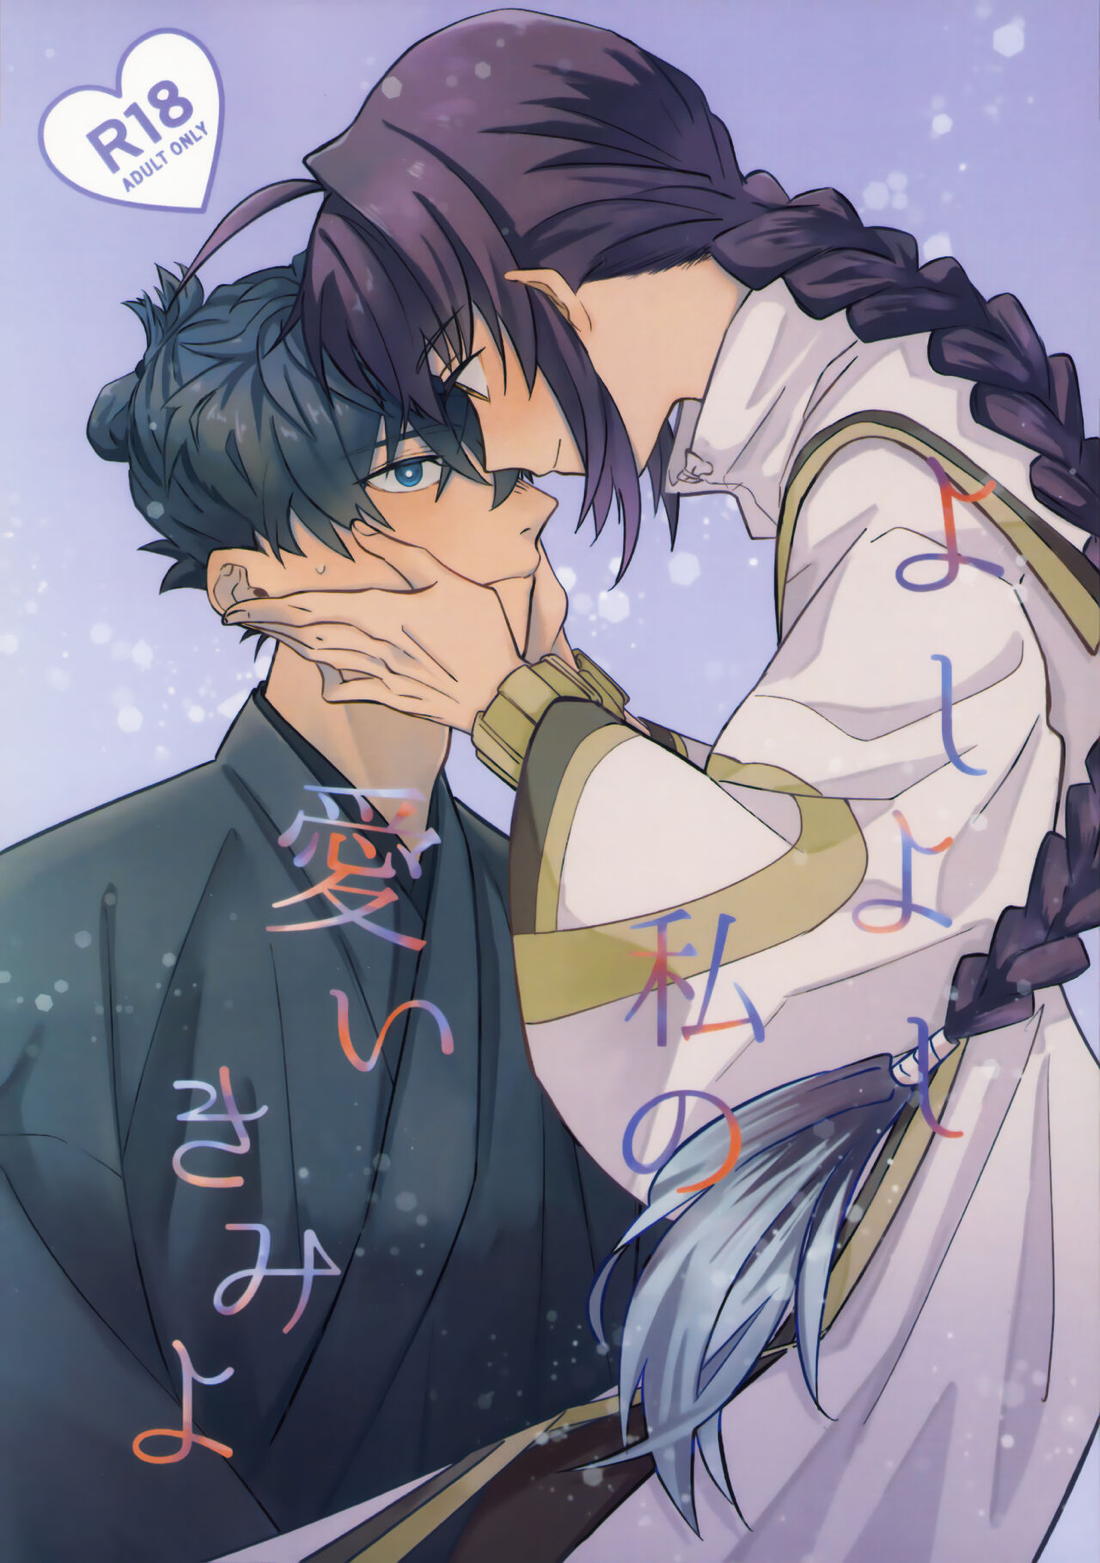 【BL漫画 Fate】セイバーにキスで迫られた宮本伊織が困惑しながらも受け入れて緊張のボーイズラブエッチ